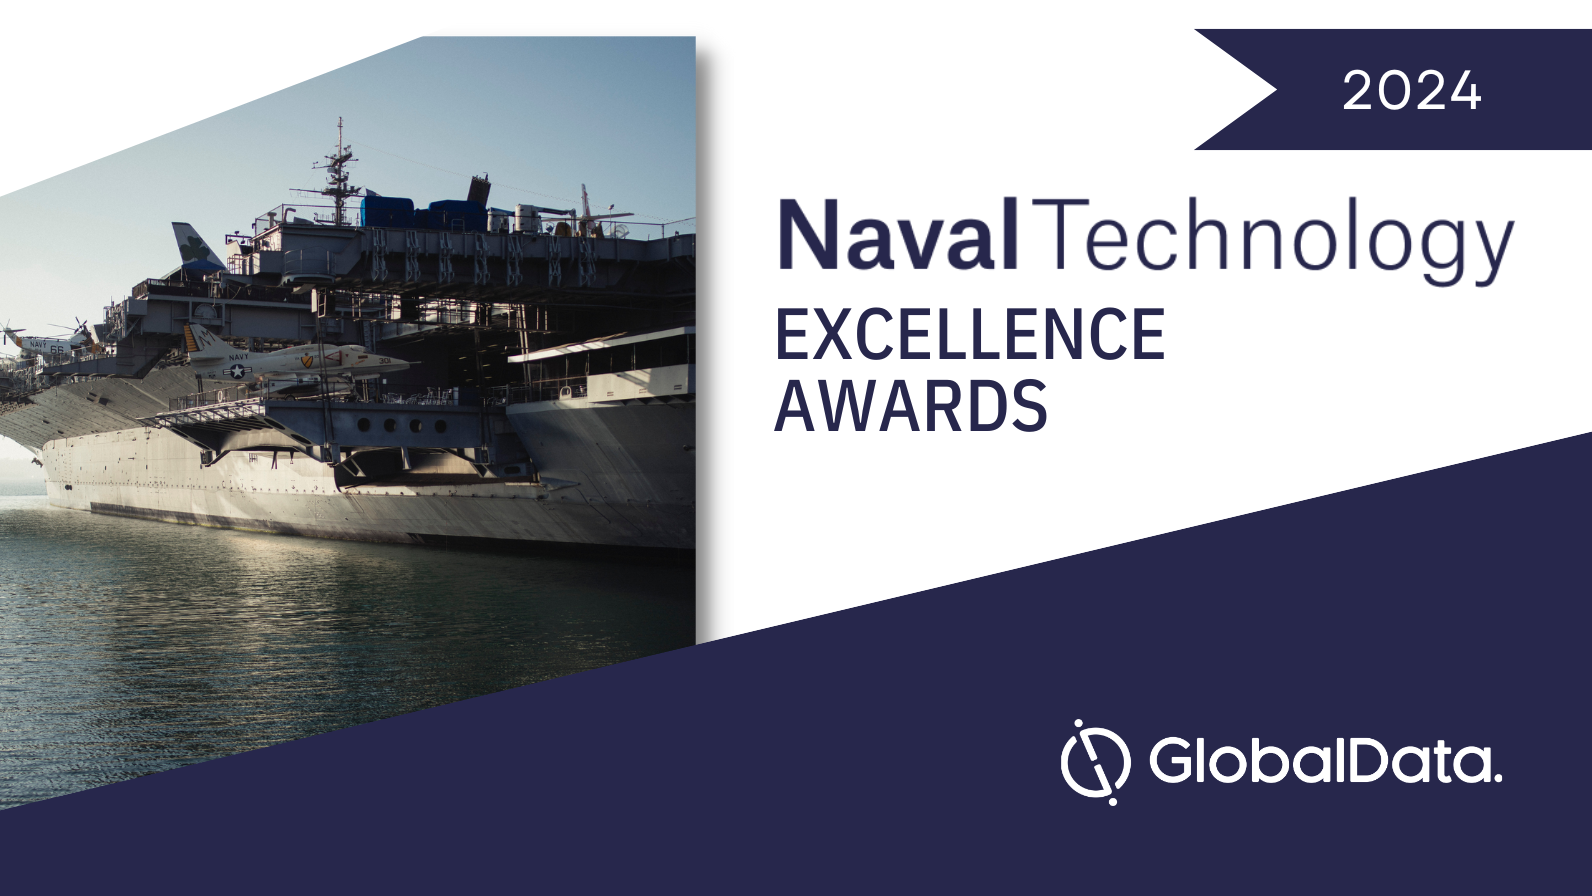 Presentamos los Premios a la Excelencia en Tecnología Naval 2024